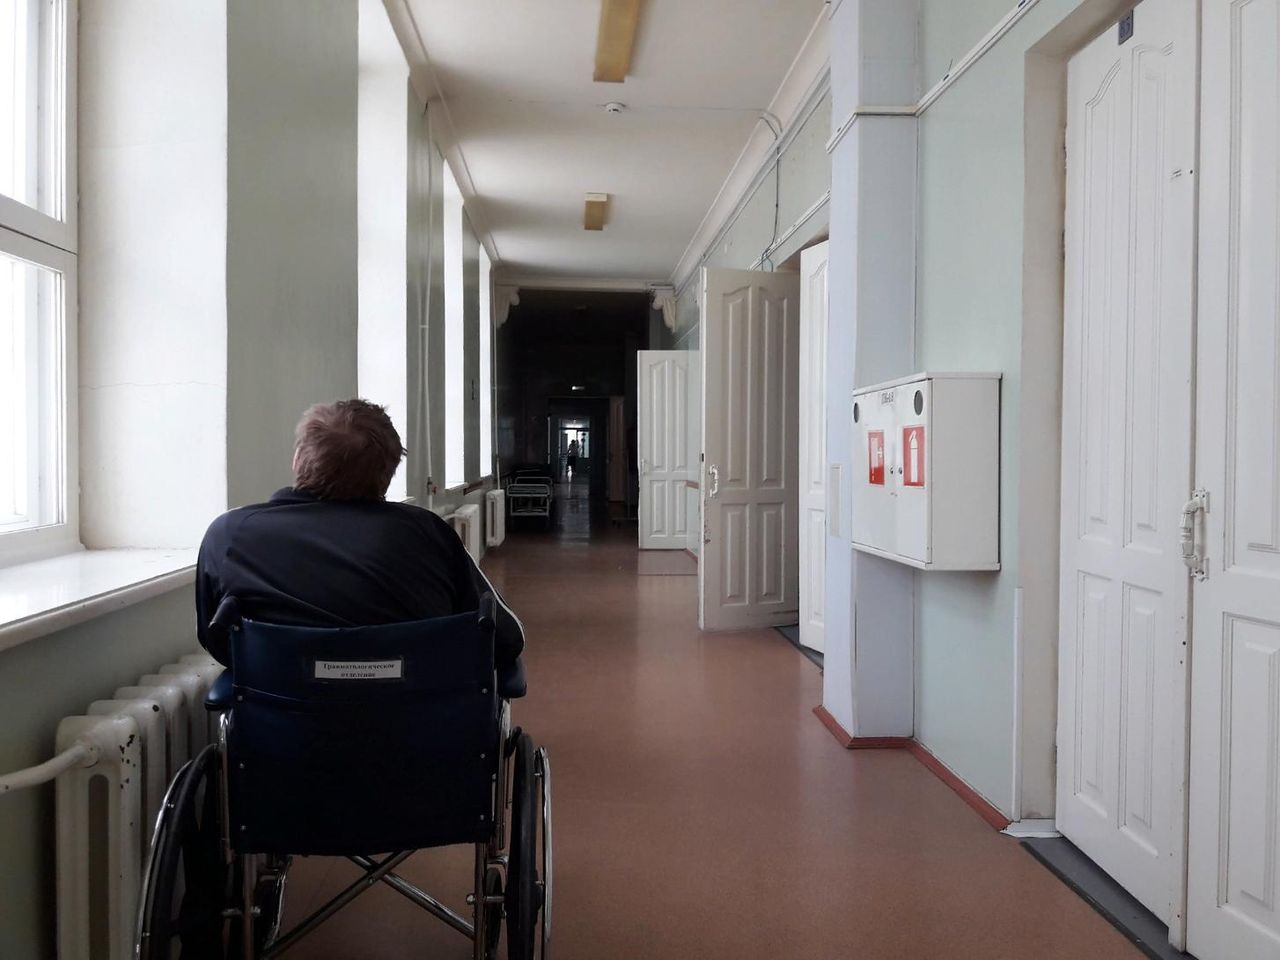 Депутат Госдумы сообщил о возможных приписках в больницах. Проверьте, на сколько "вылечили" вас